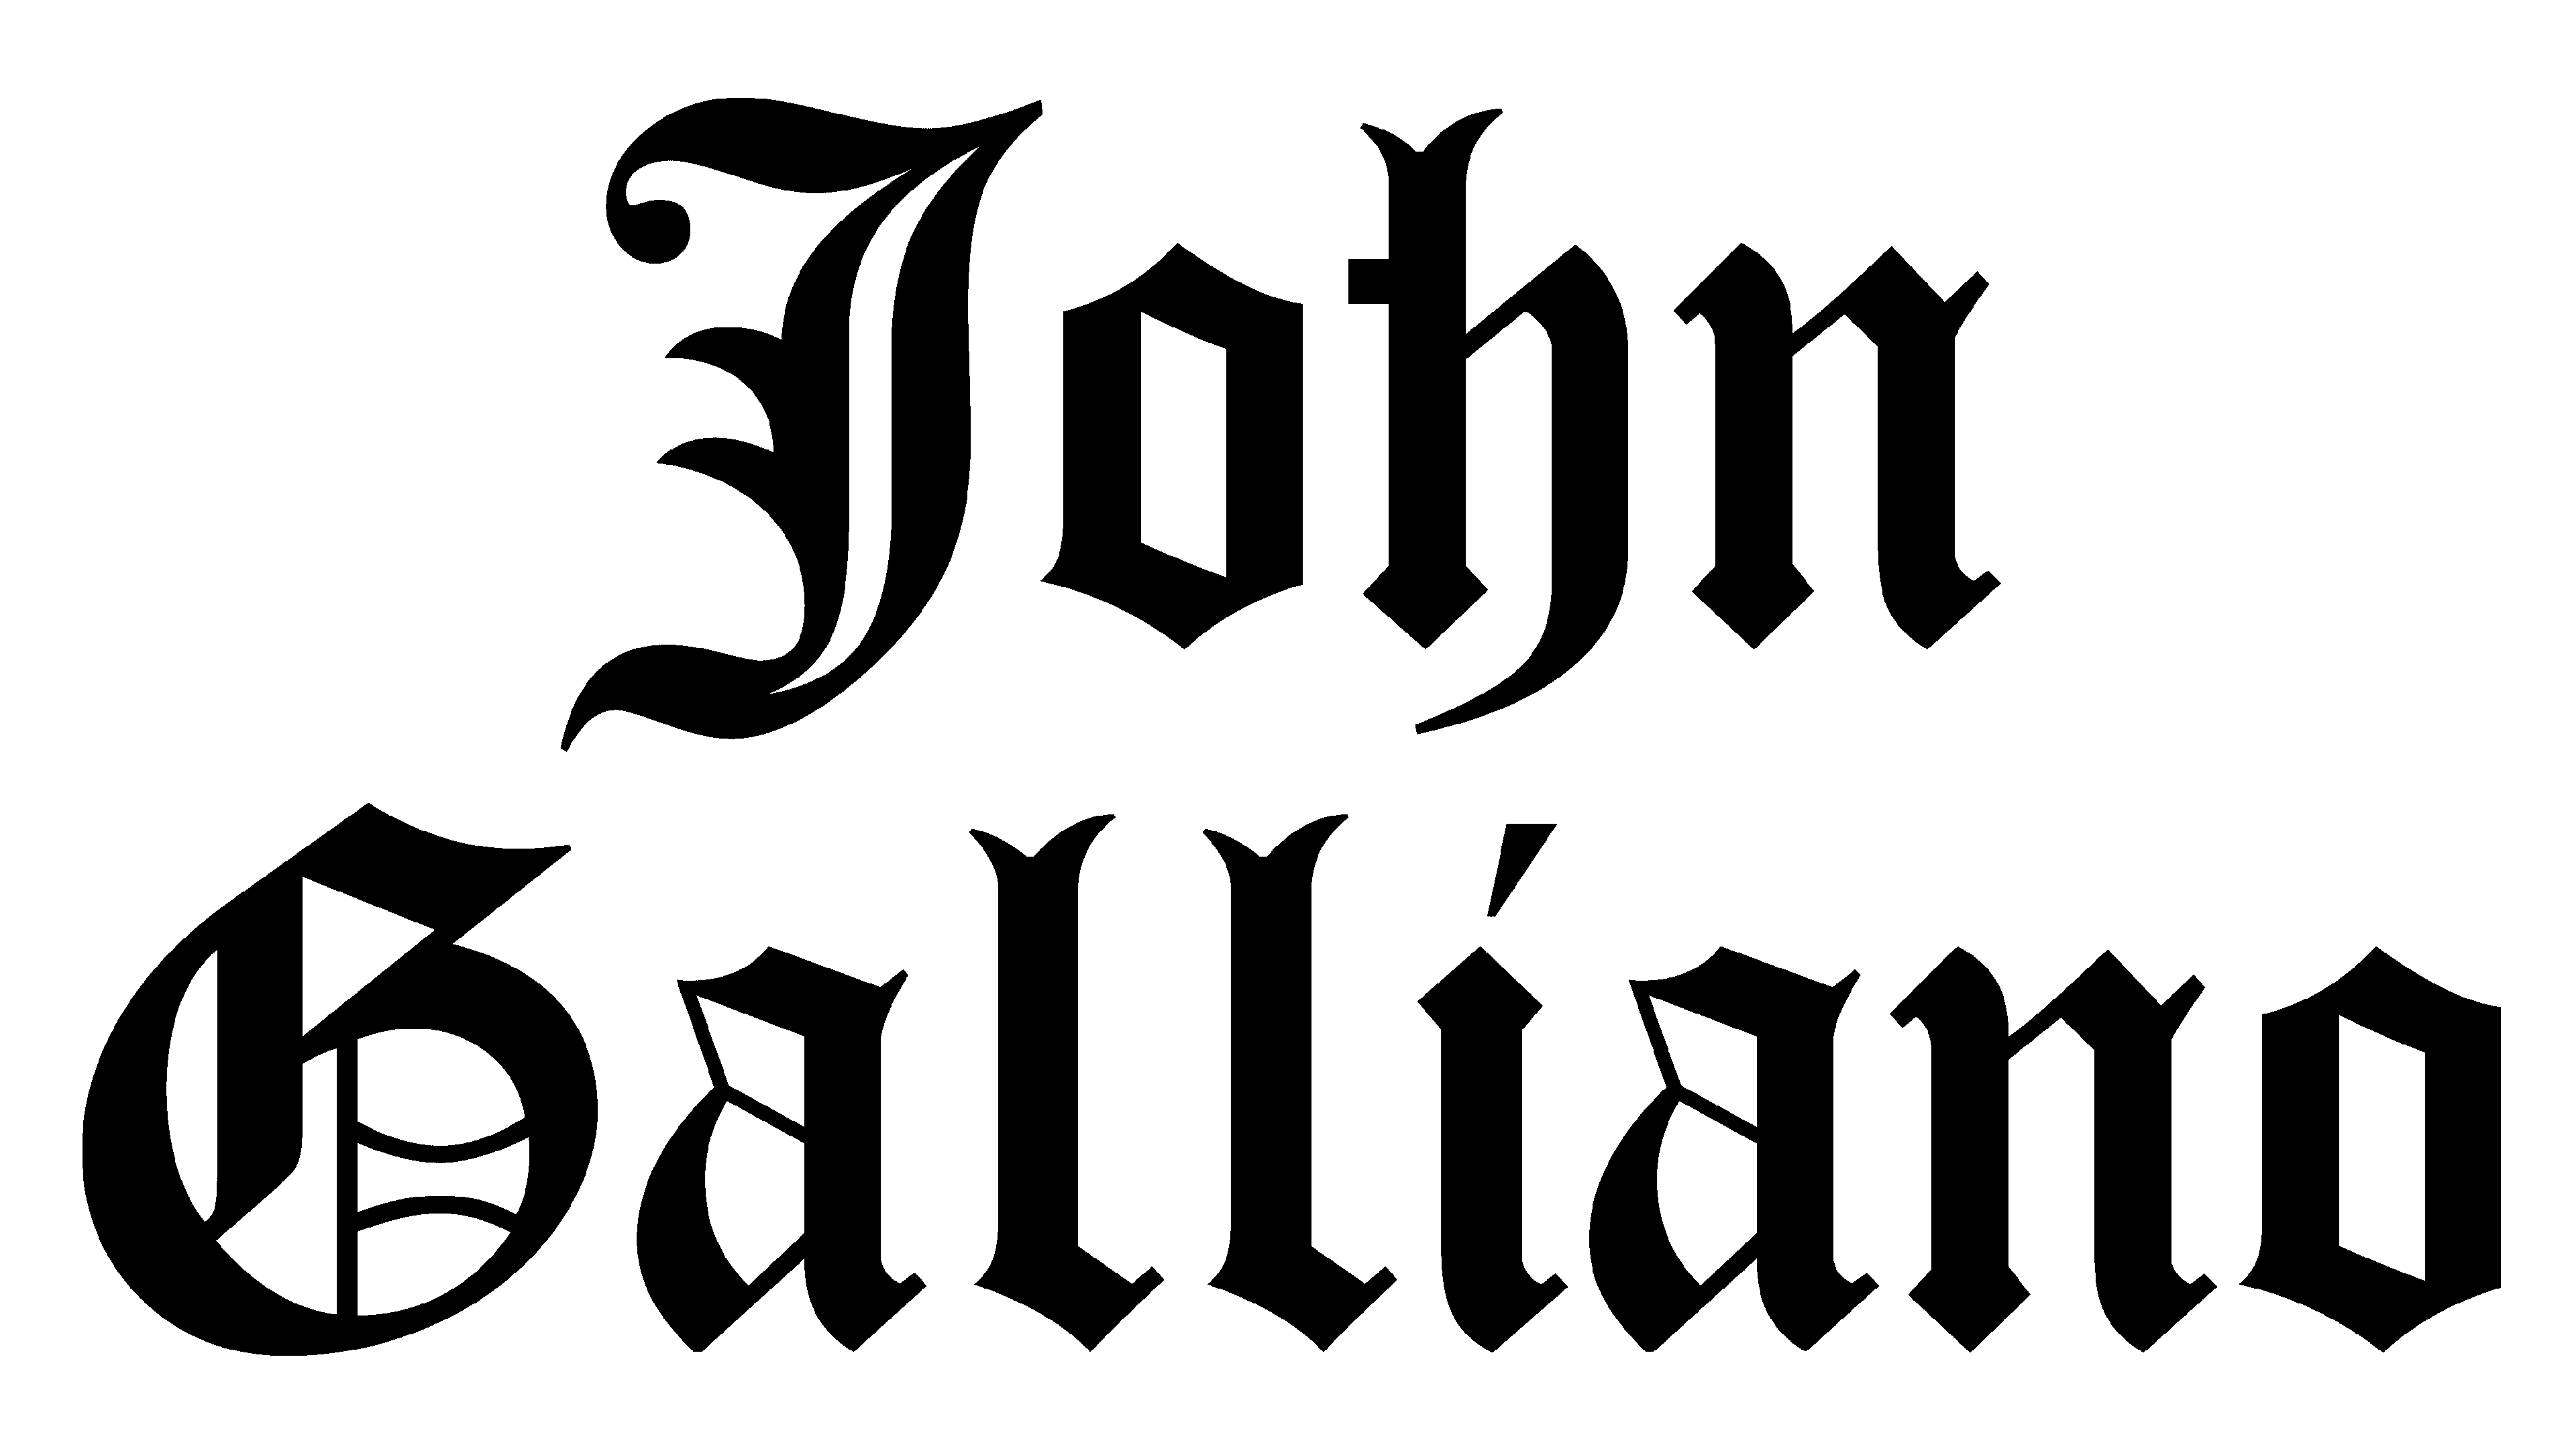 John Galliano biograhpy